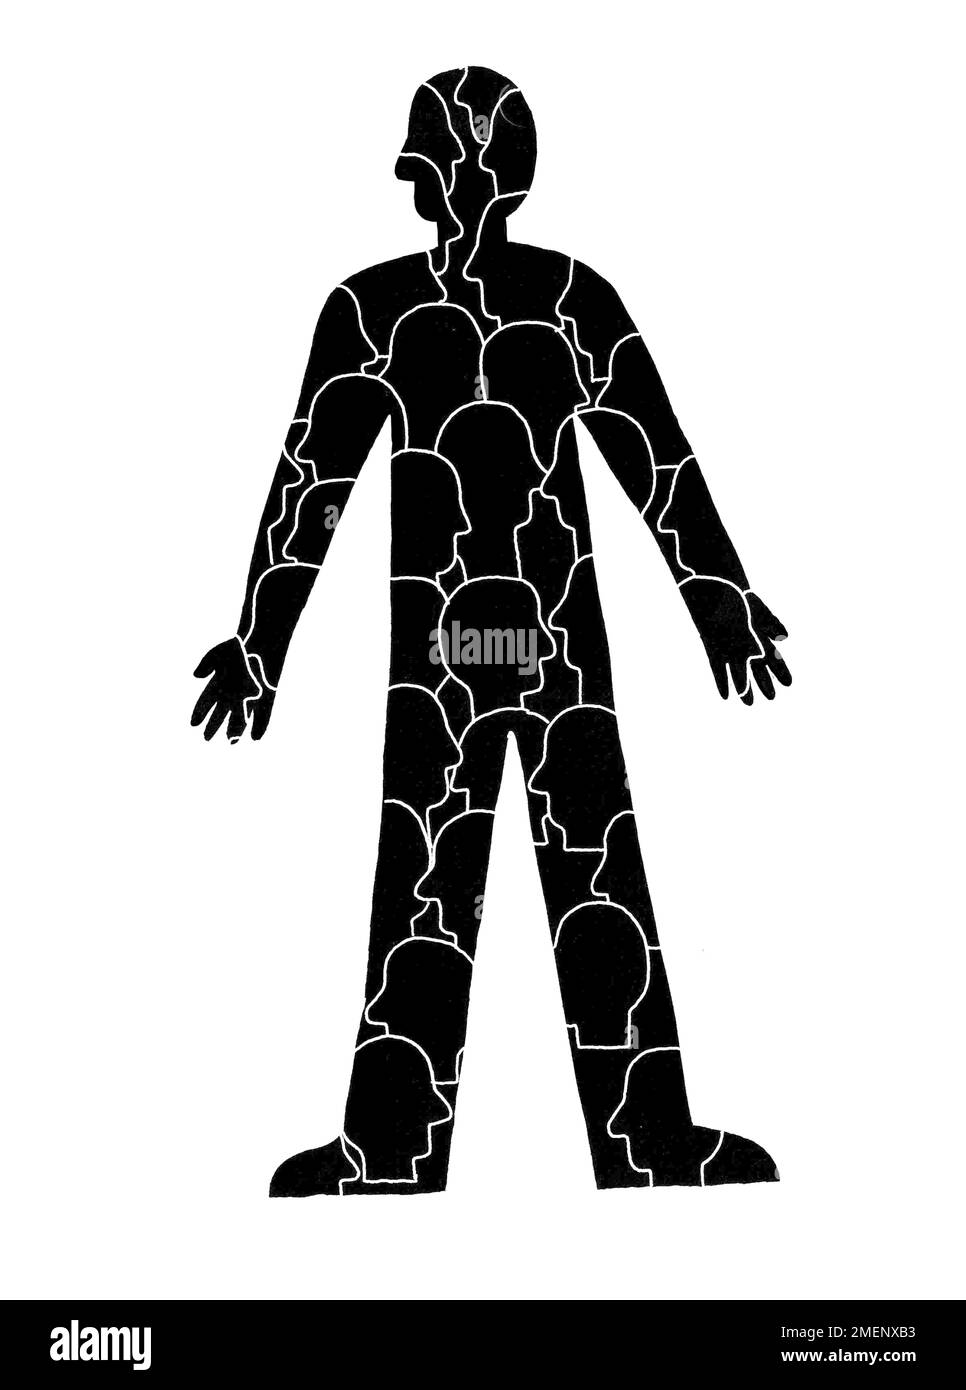 Illustration noire et blanche des têtes superposées sur le corps d'une personne, illustrant le concept que nous devenons nous-mêmes par d'autres, Lev Vygotsky Banque D'Images